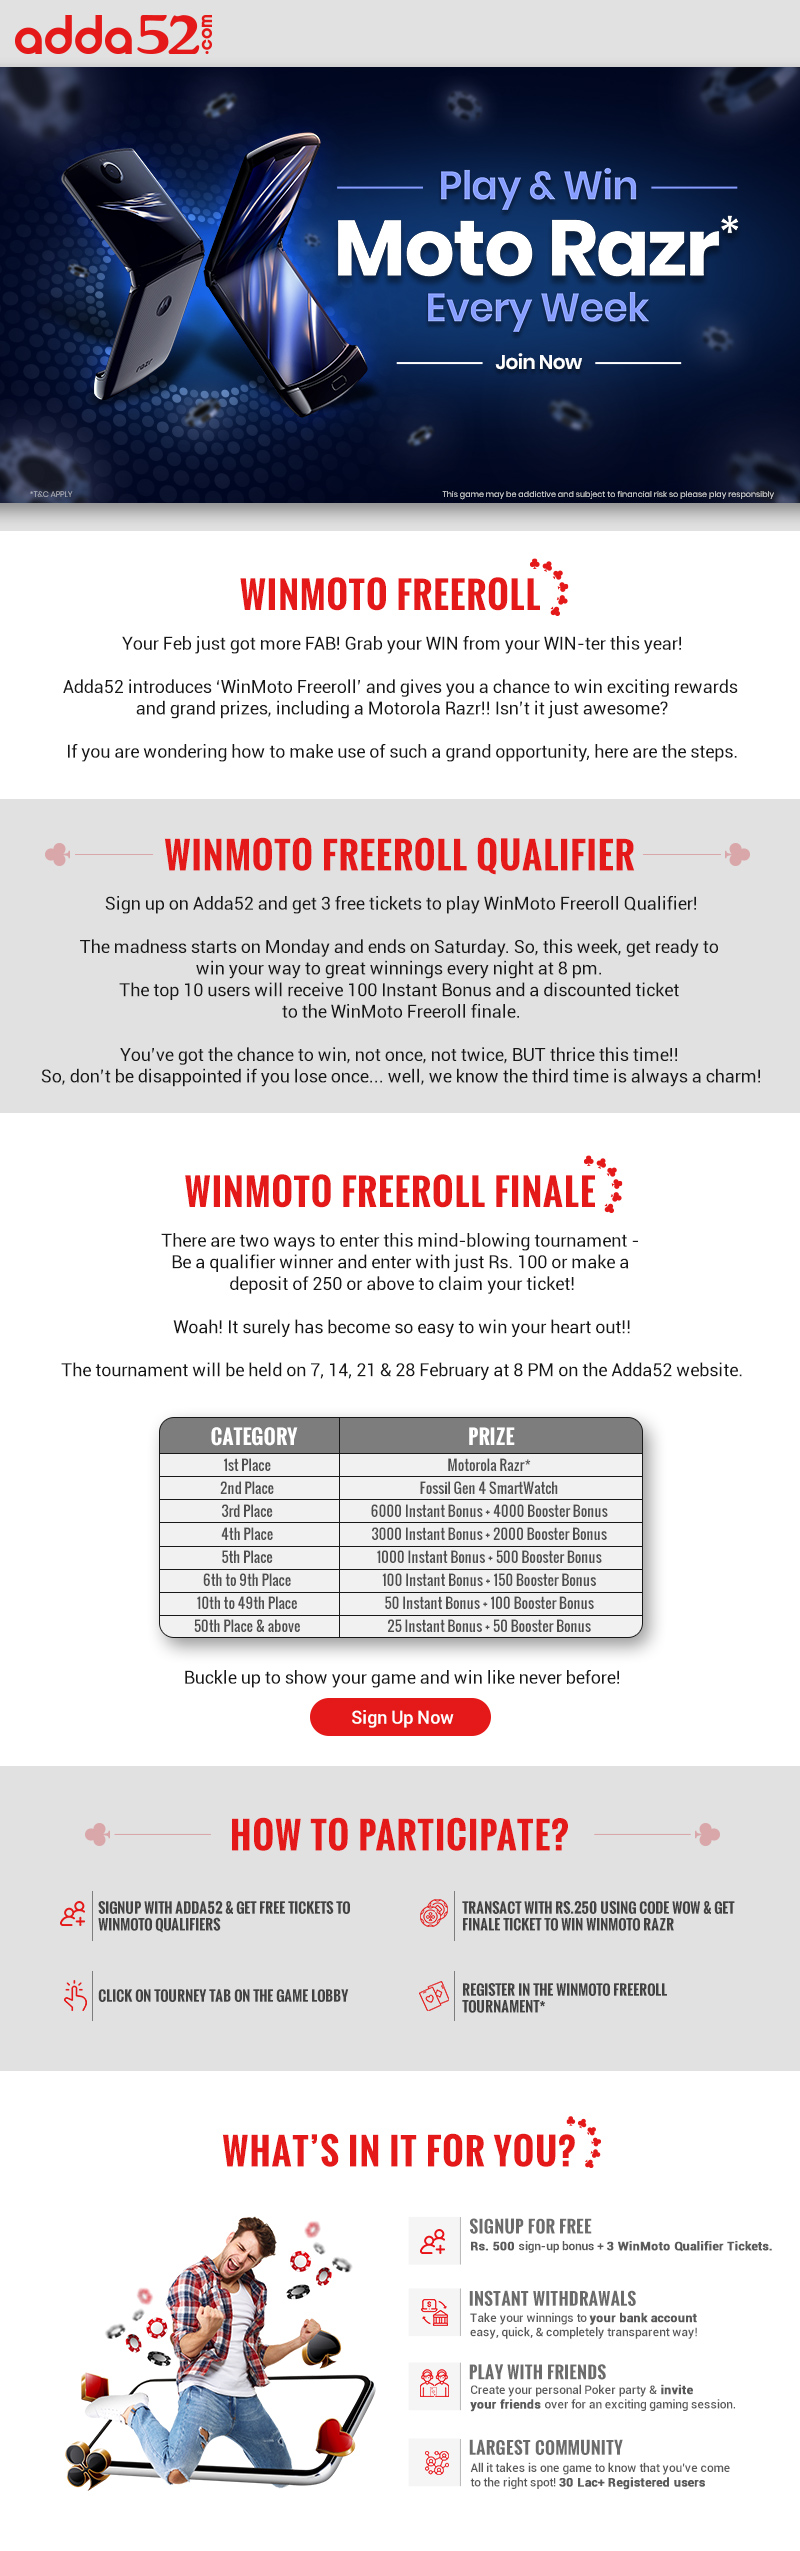 Win Moto Freeroll